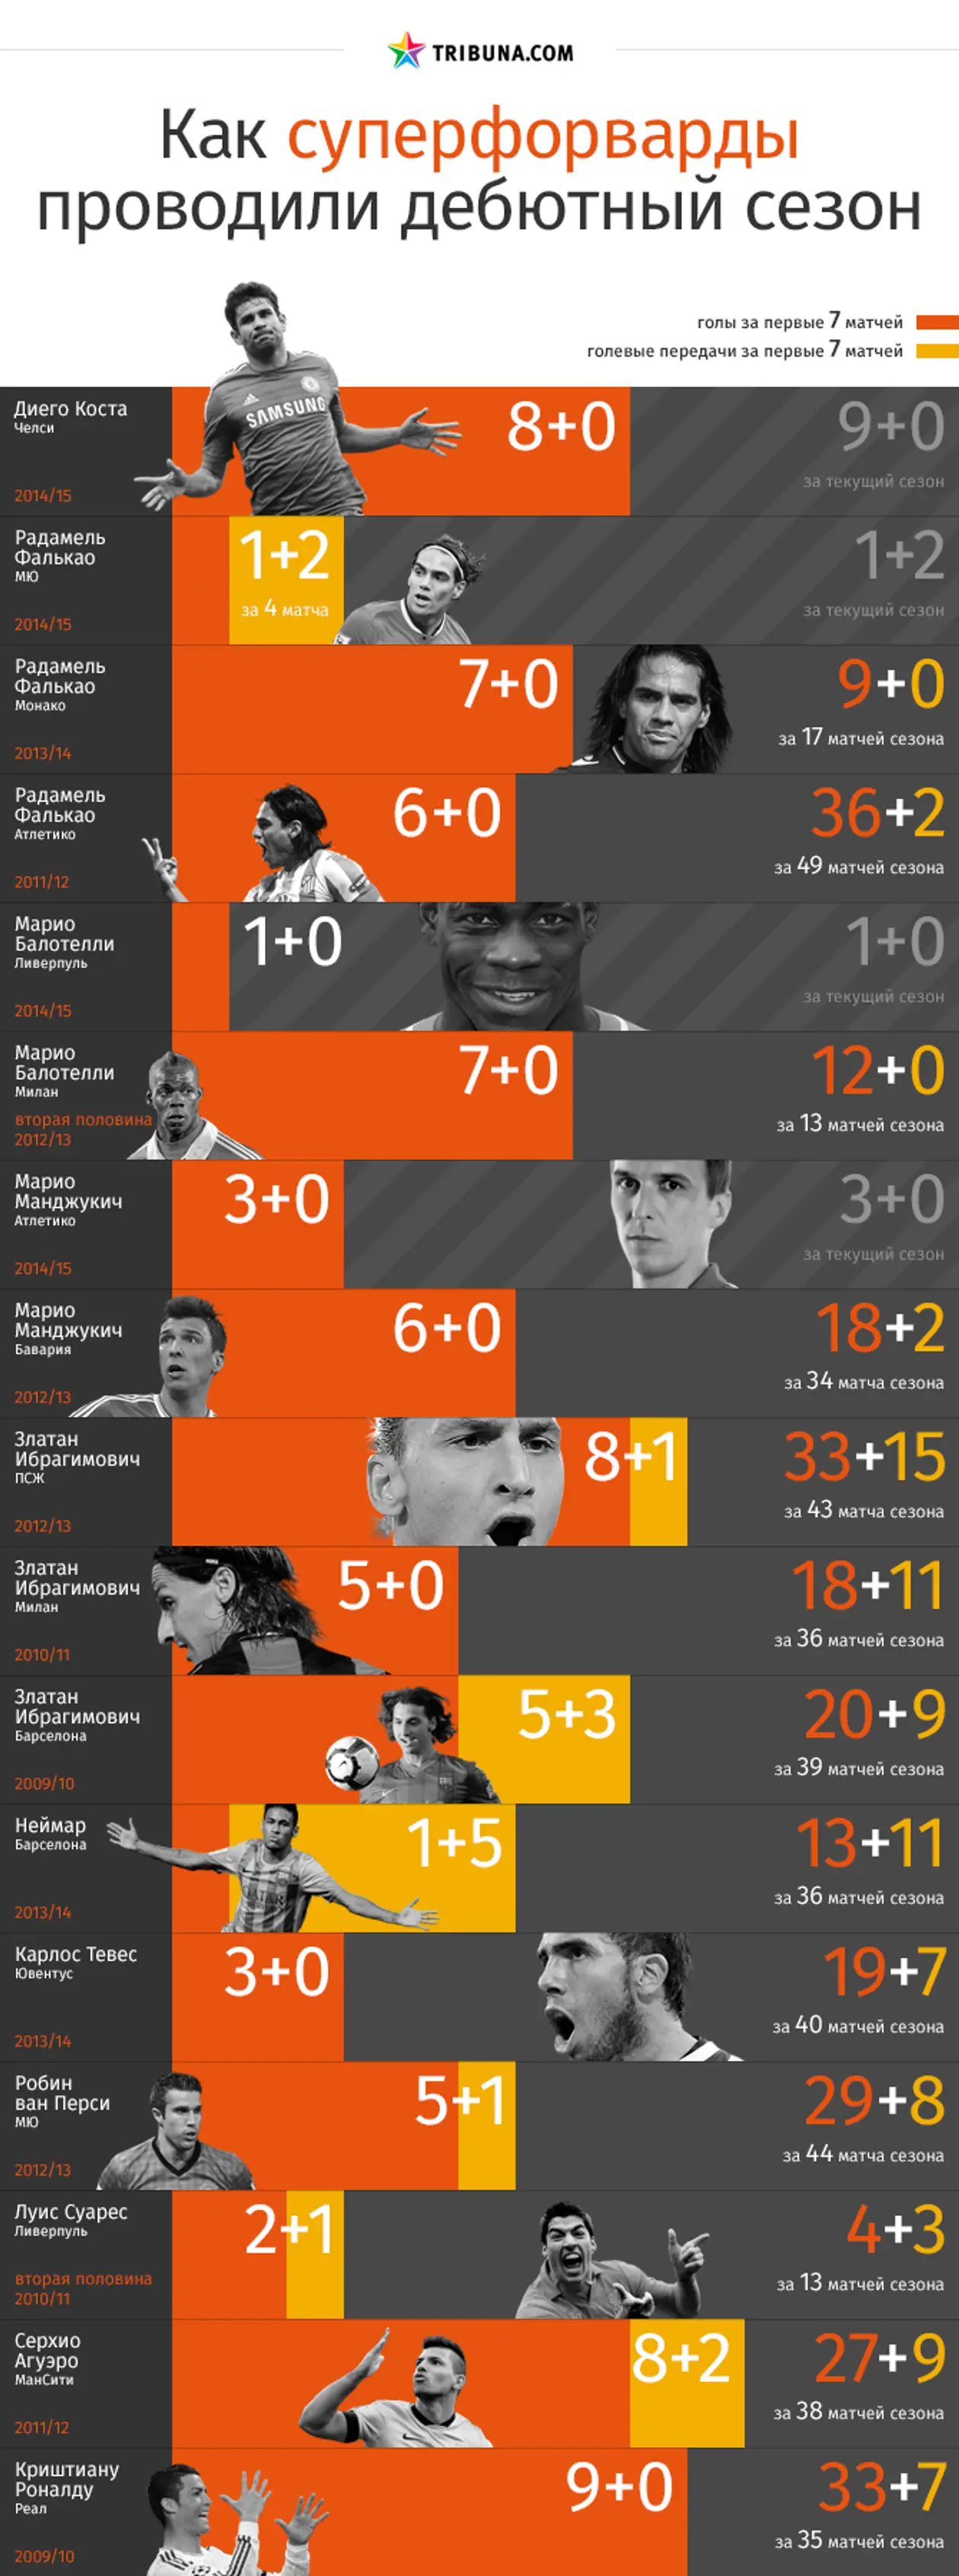 Как суперфорварды проводили дебютные сезоны. Инфографика Tribuna.com